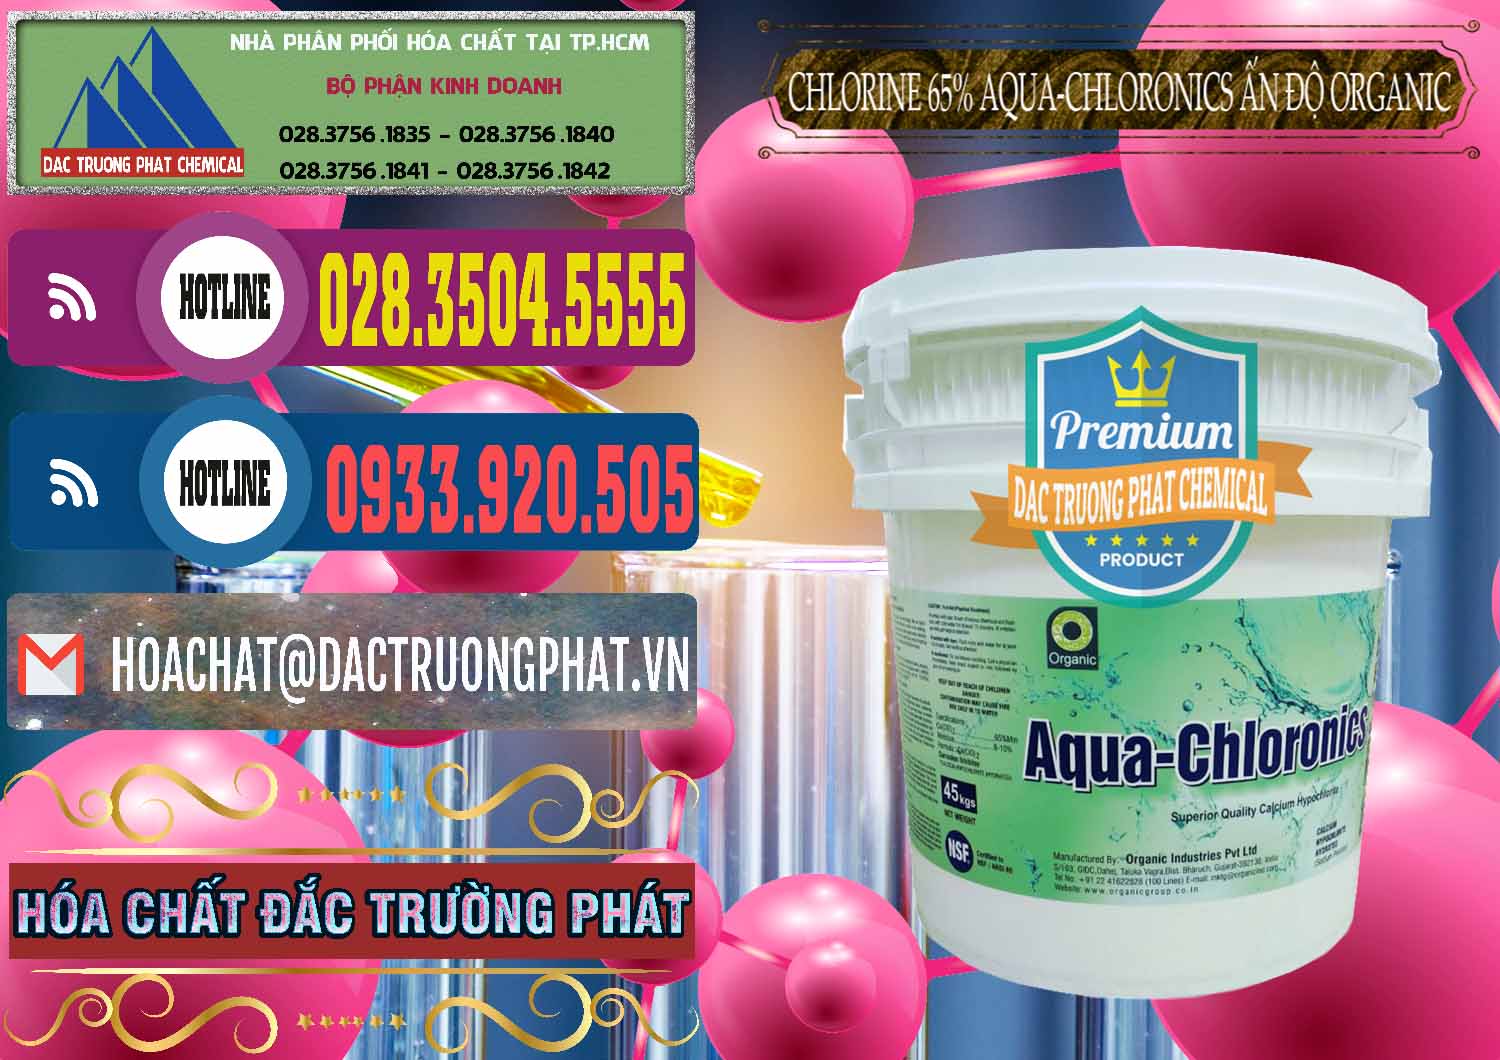 Chuyên phân phối & bán Chlorine – Clorin 65% Aqua-Chloronics Ấn Độ Organic India - 0210 - Cty chuyên kinh doanh và cung cấp hóa chất tại TP.HCM - muabanhoachat.com.vn